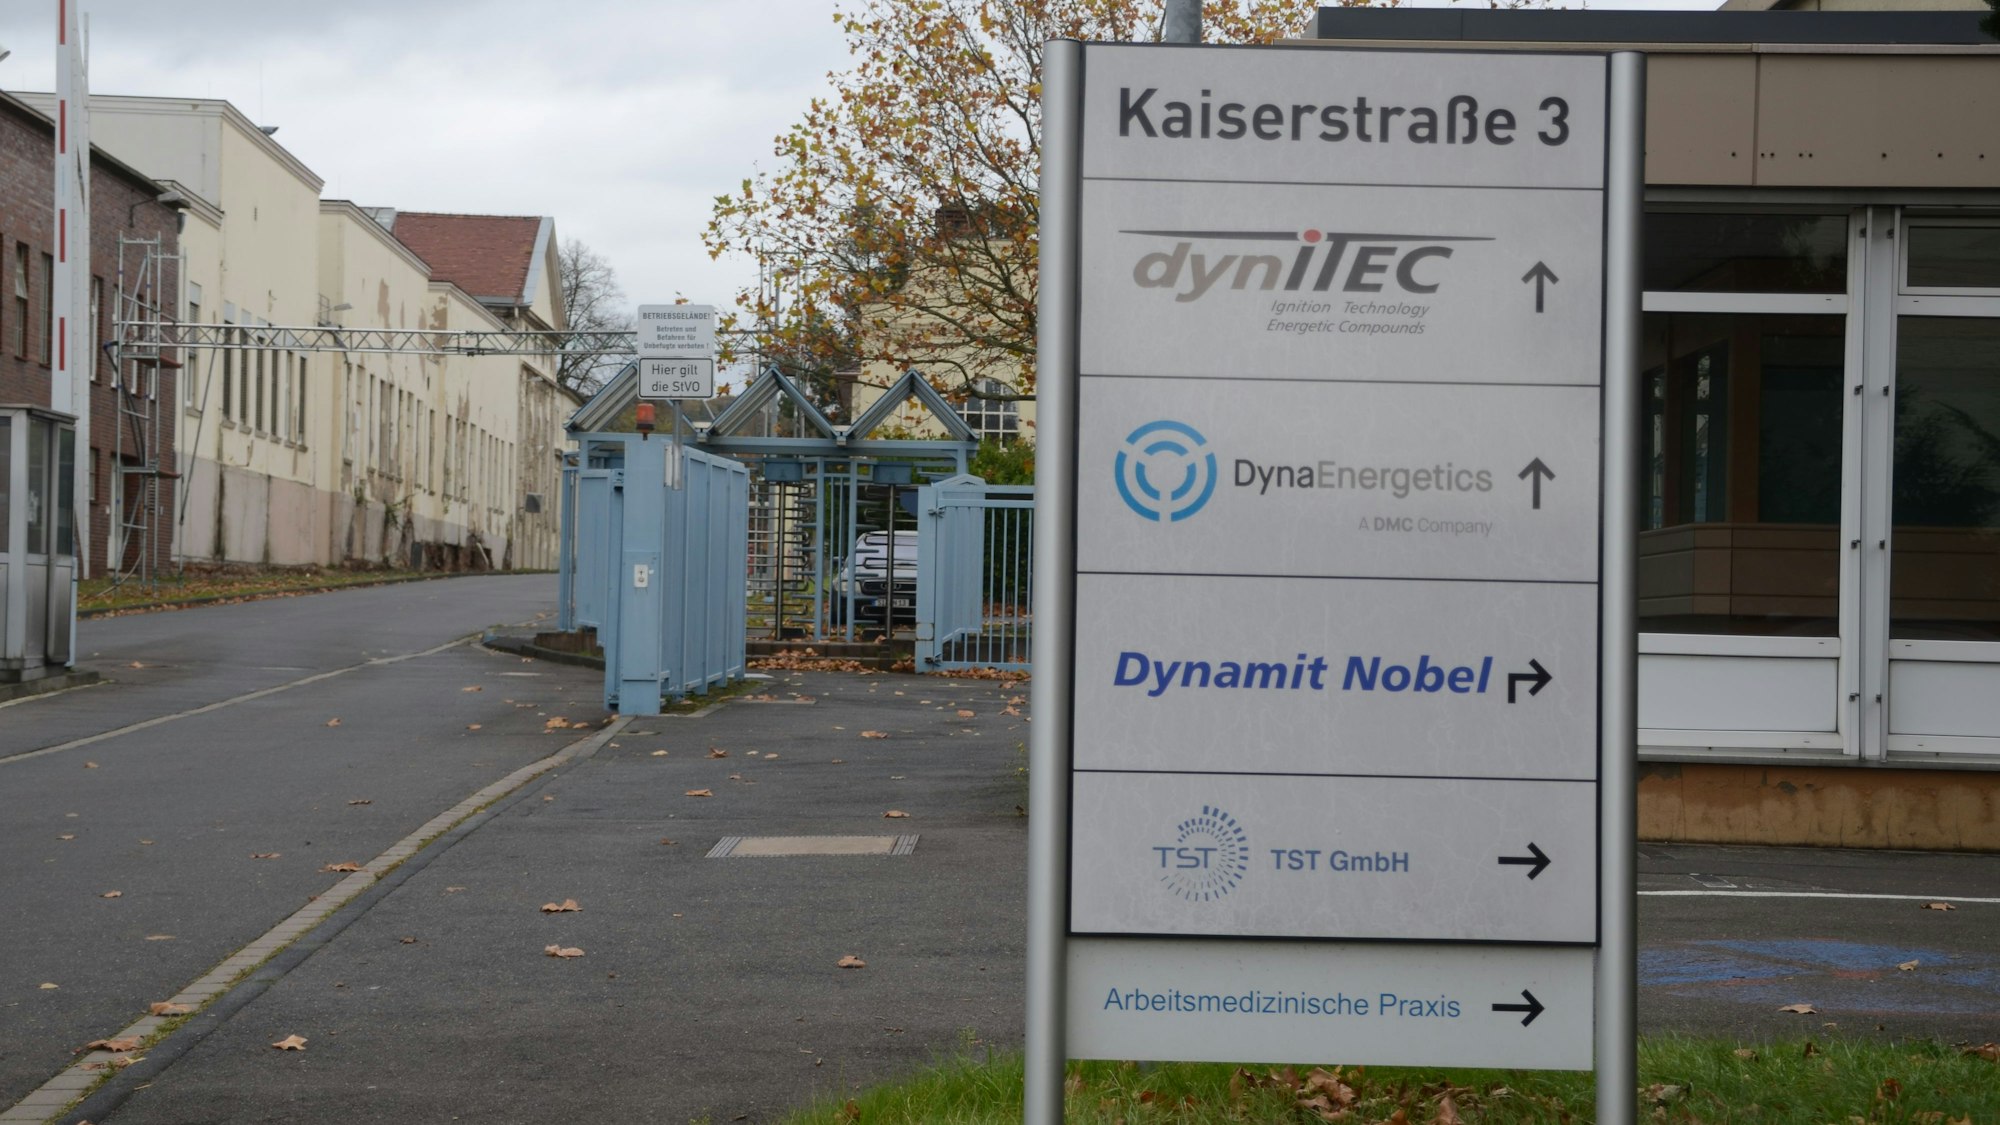 Das Tor zu einem Gewerbegebiet. Auf einem Schild steht die Adresse Kasierstraße 3; darunter sind die Namen von Firmen aufgelistet.